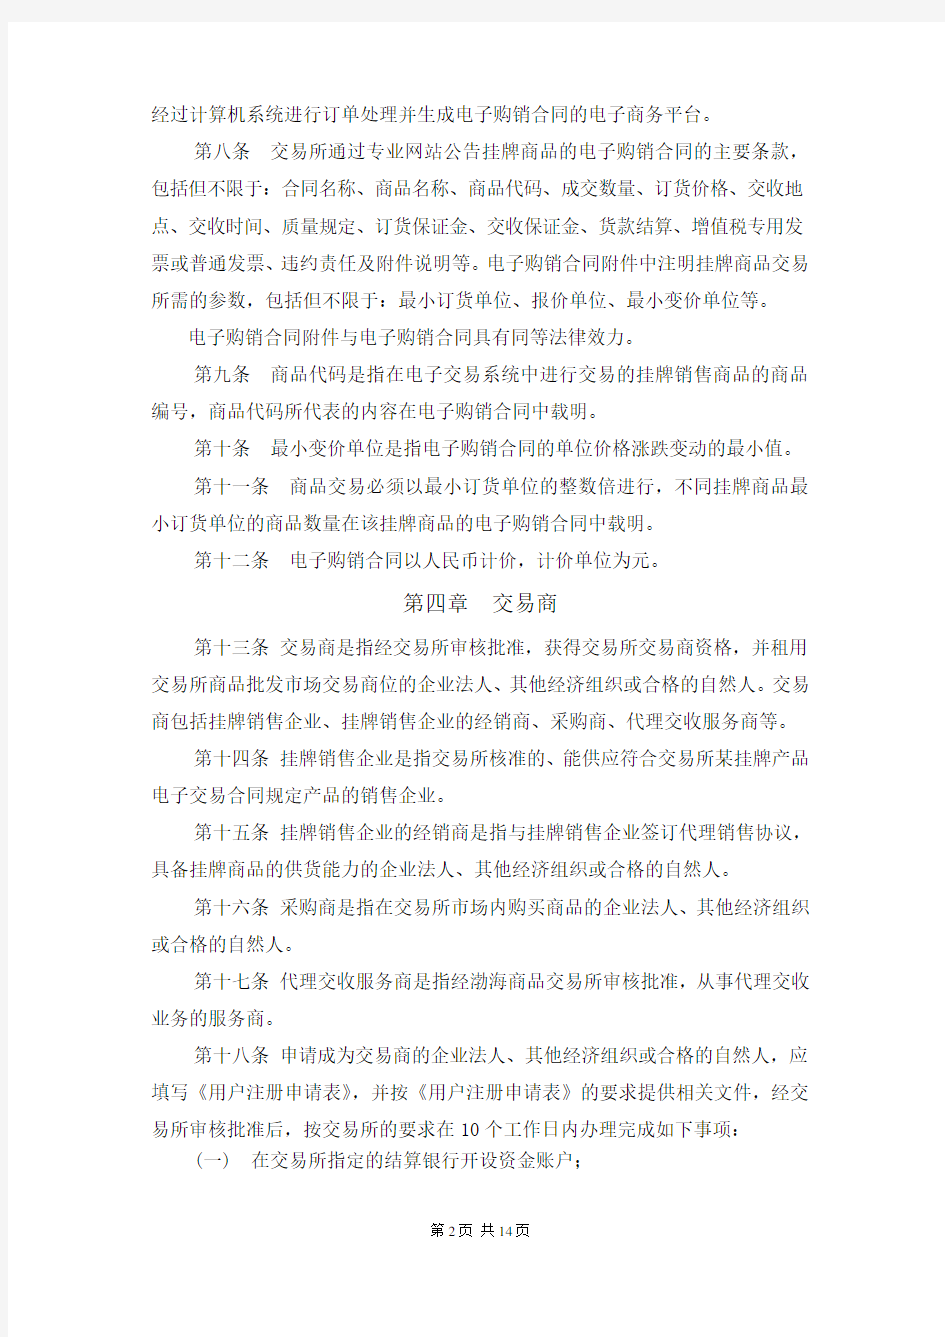 天津渤海商品交易所商品批发市场管理办法(暂行)